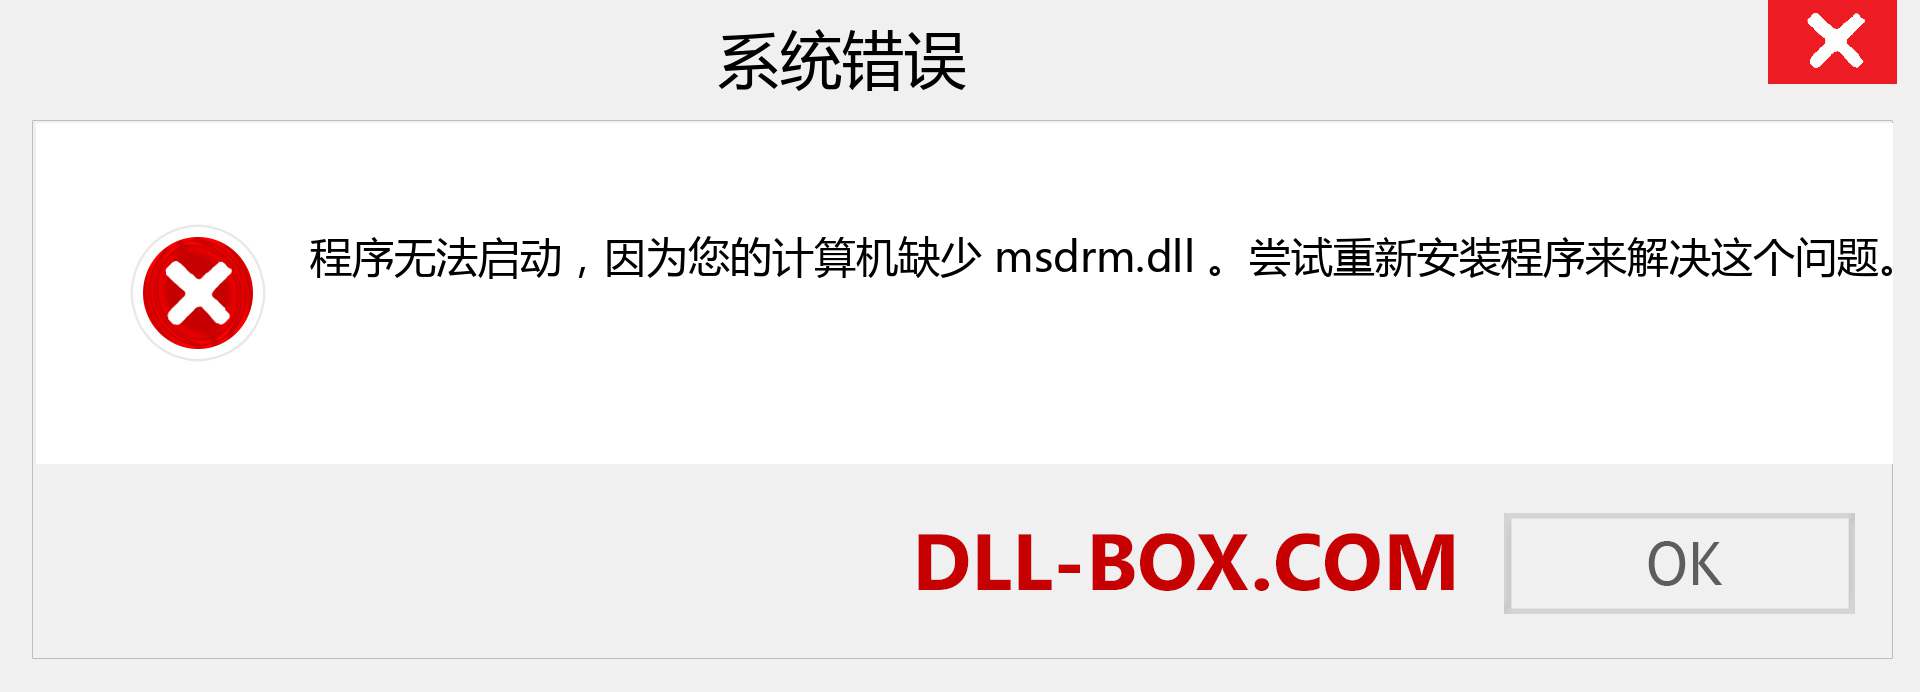 msdrm.dll 文件丢失？。 适用于 Windows 7、8、10 的下载 - 修复 Windows、照片、图像上的 msdrm dll 丢失错误